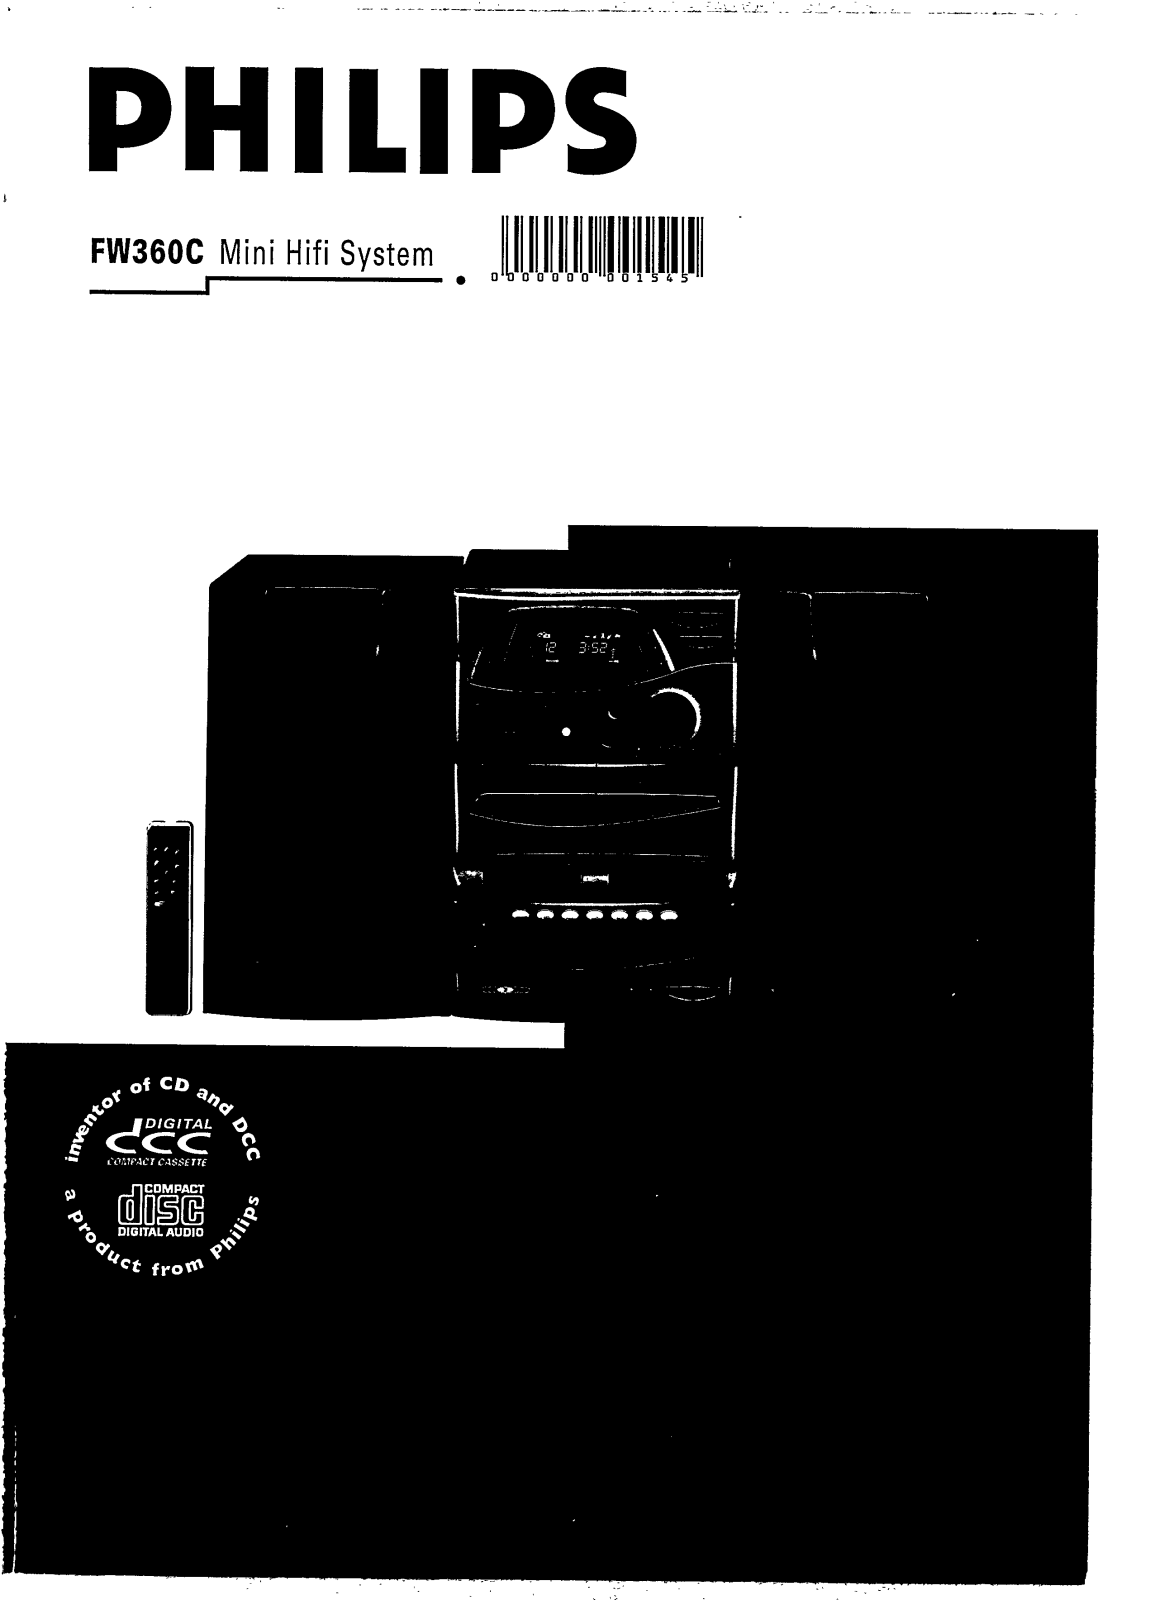 Philips FW360C/25, FW360C/22, FW360C/21, FW360C/20, FW360C User Manual